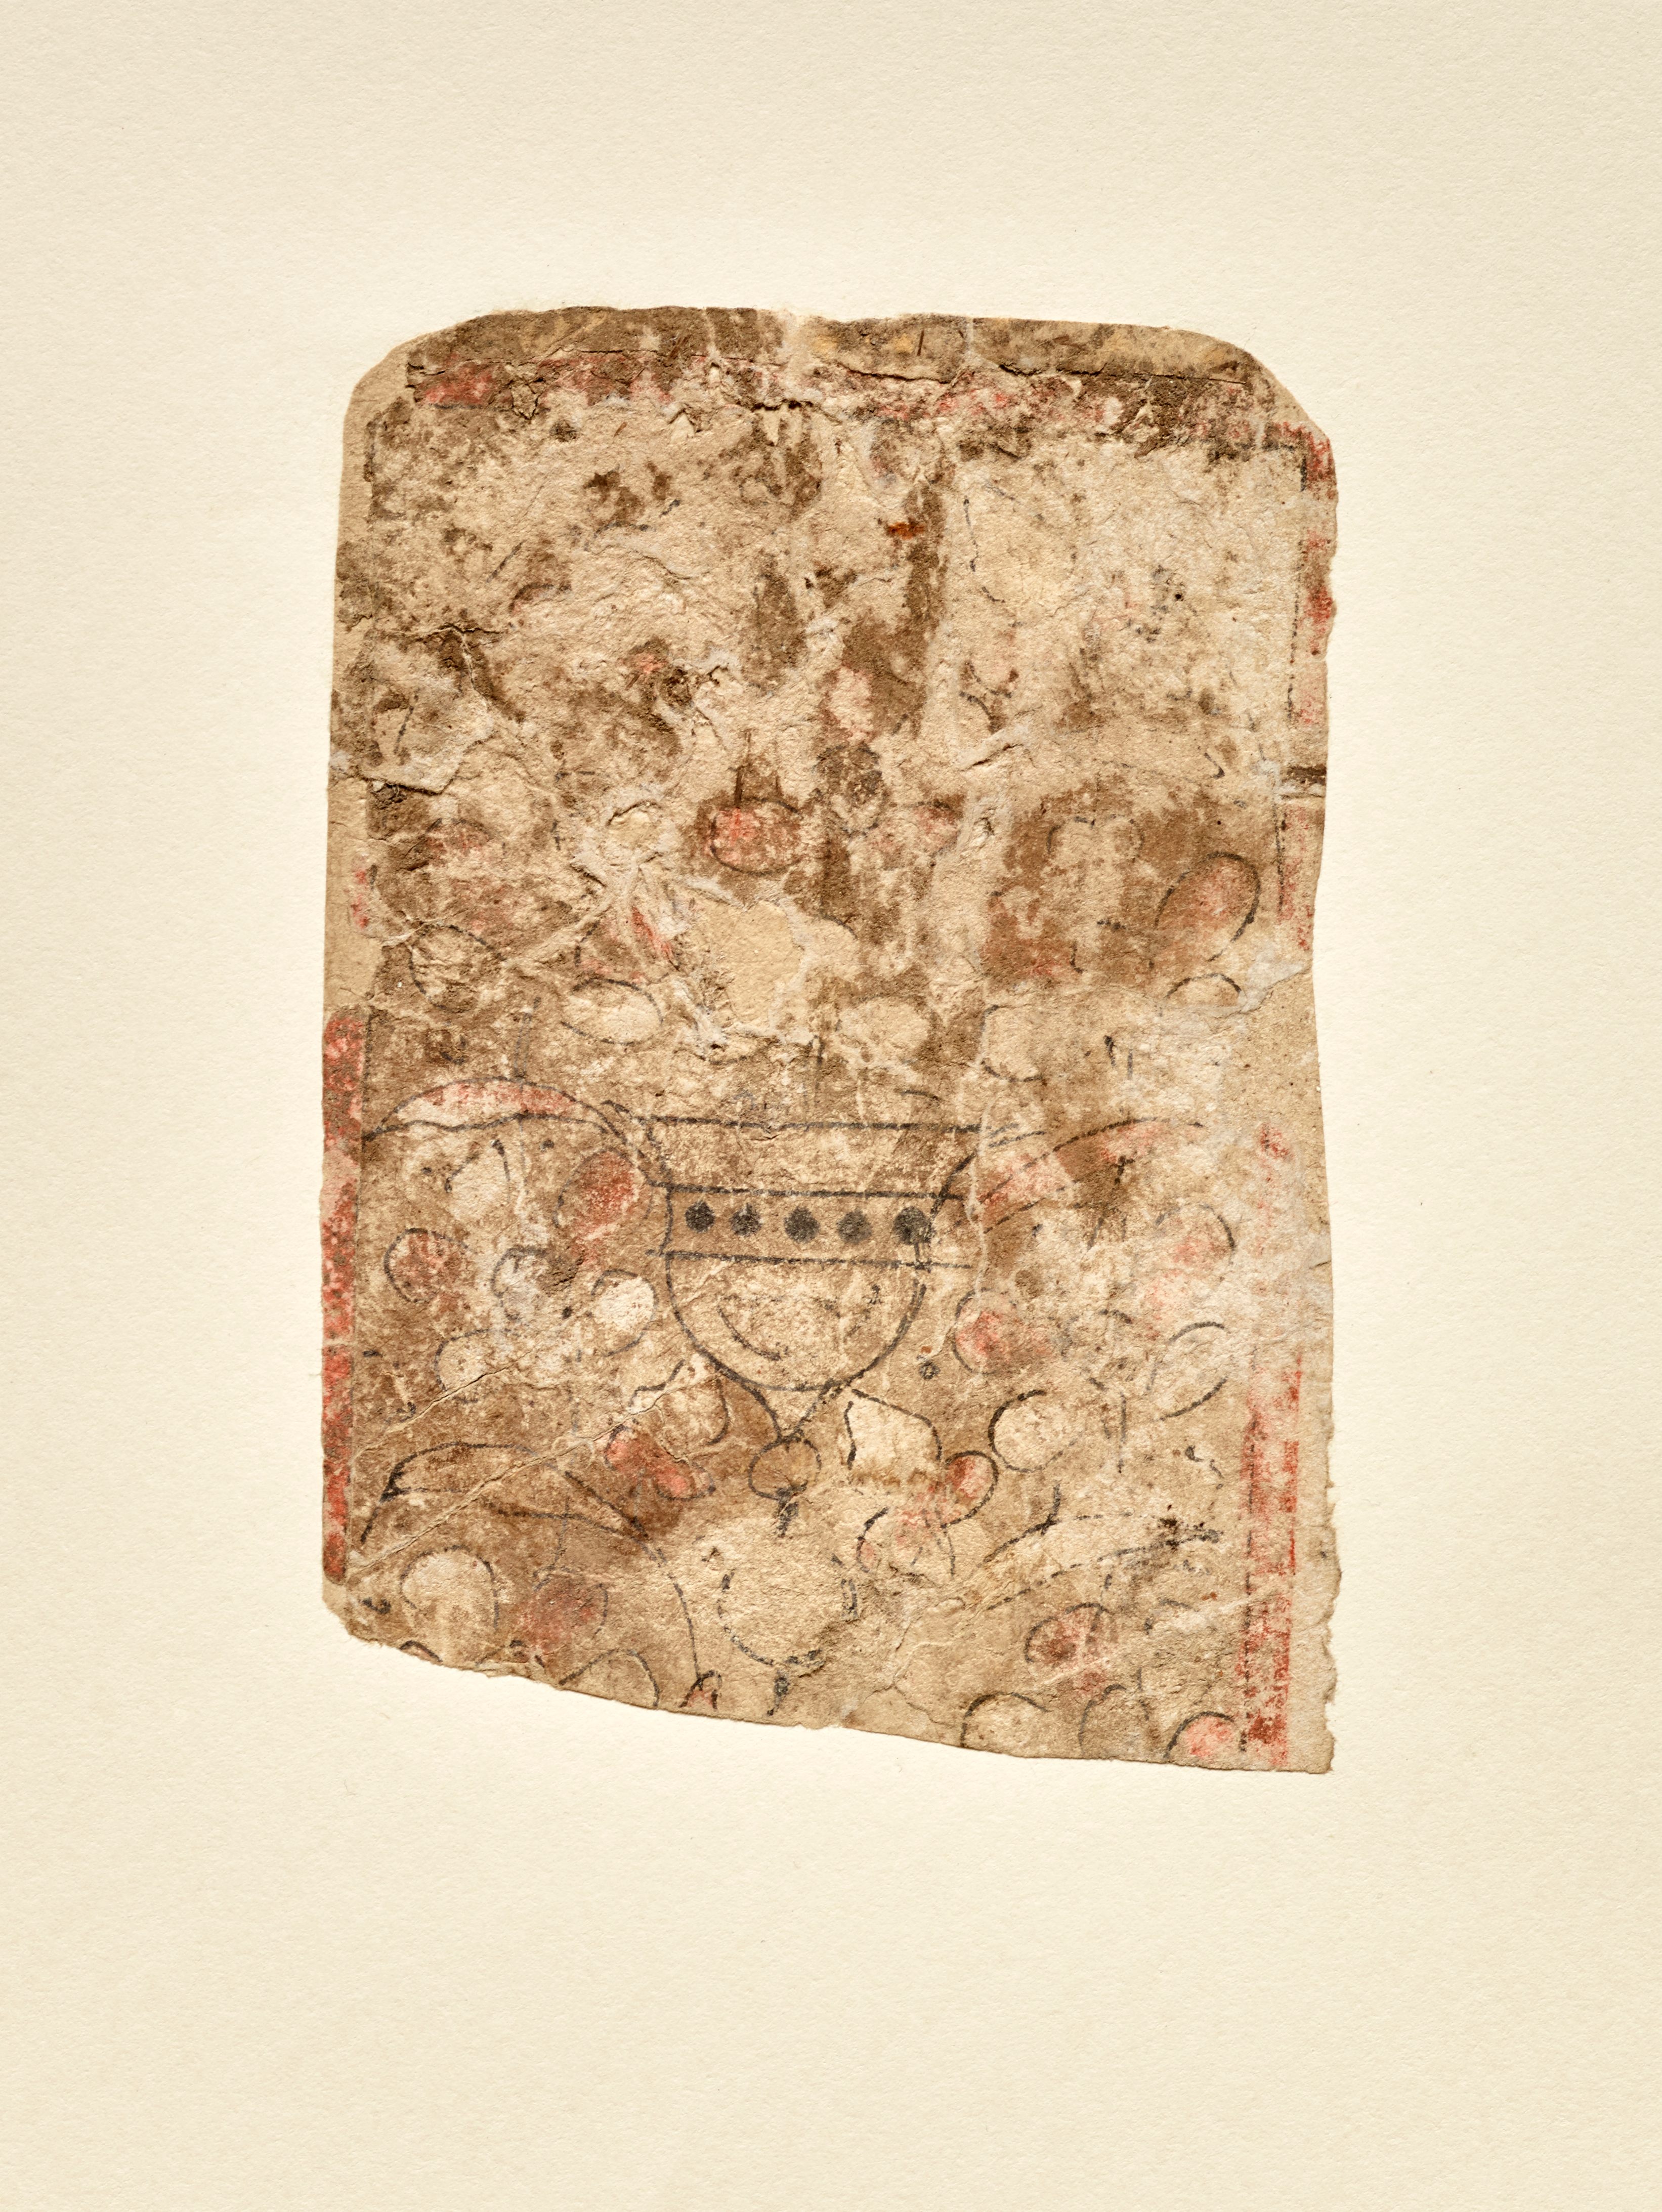 Θραύσμα τραπουλόχαρτου των μέσων του 13ου αιώνα (από το κοστούμι των κούπες) από την Αίγυπτο.